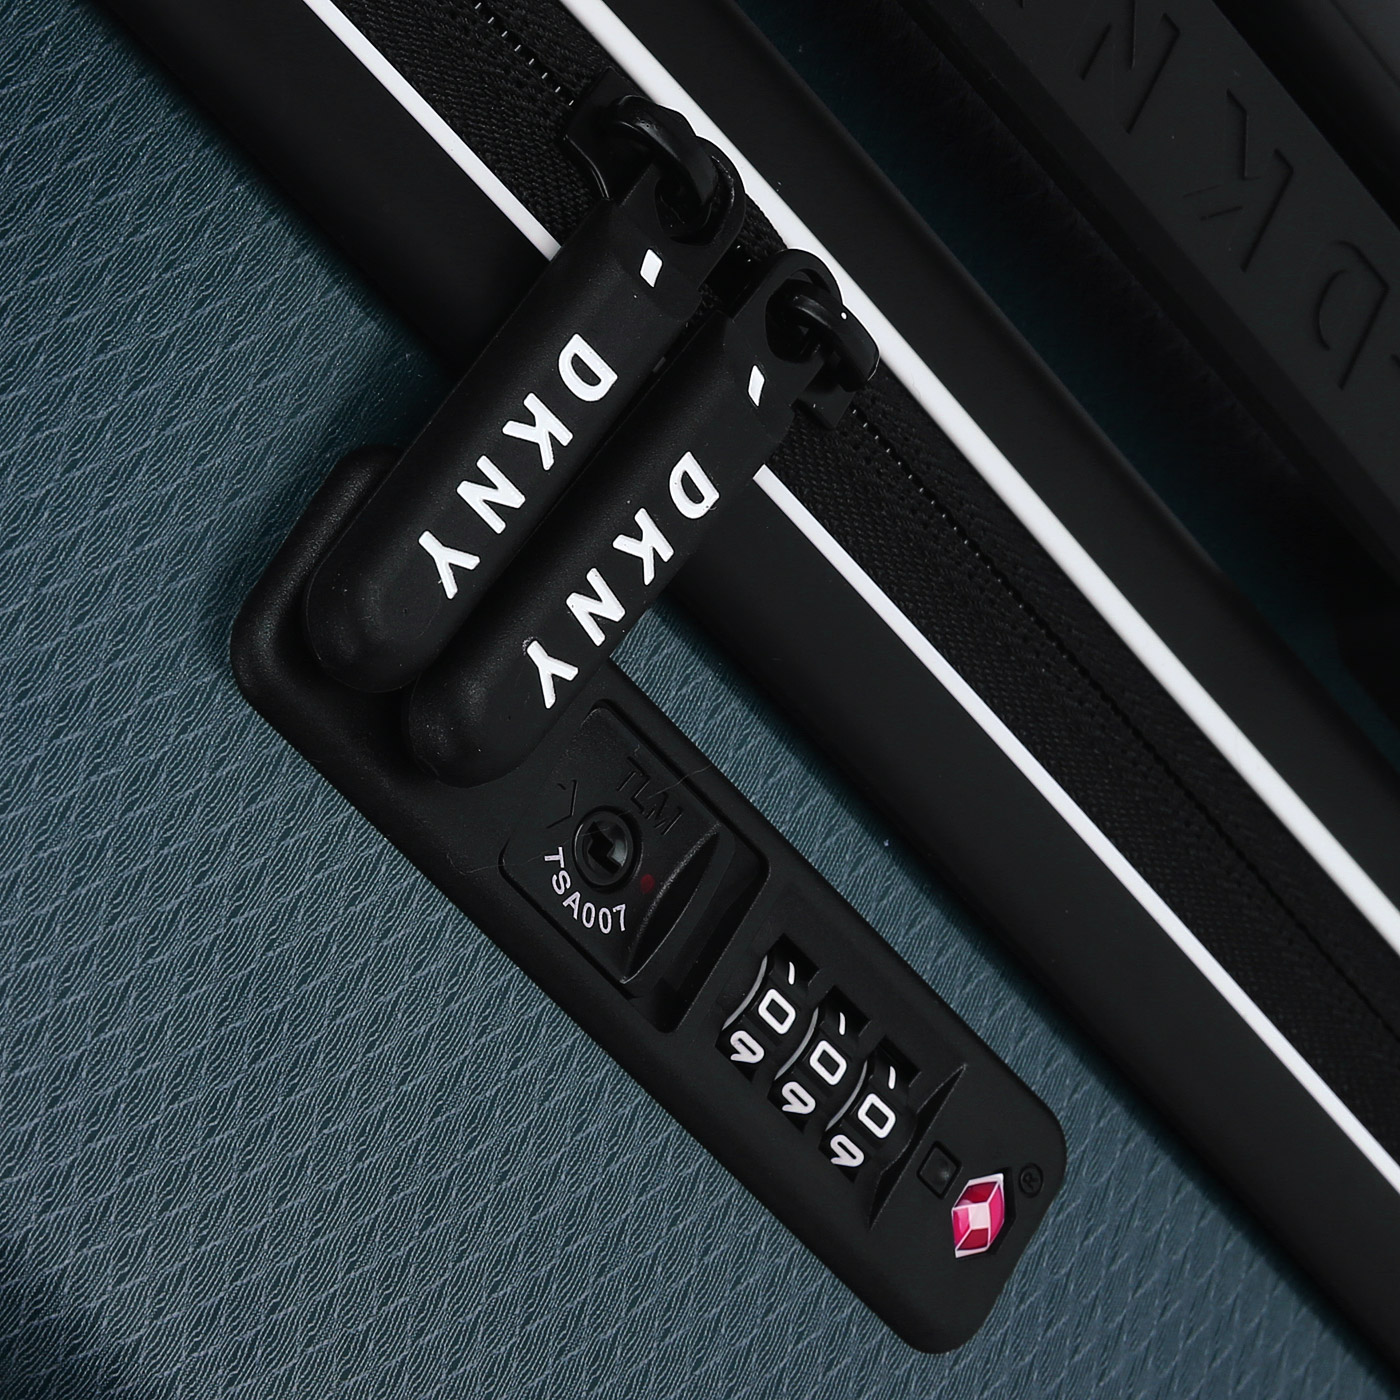 Чемодан средний M из ABS-пластика с кодовым замком DKNY DKNY-300 Dash